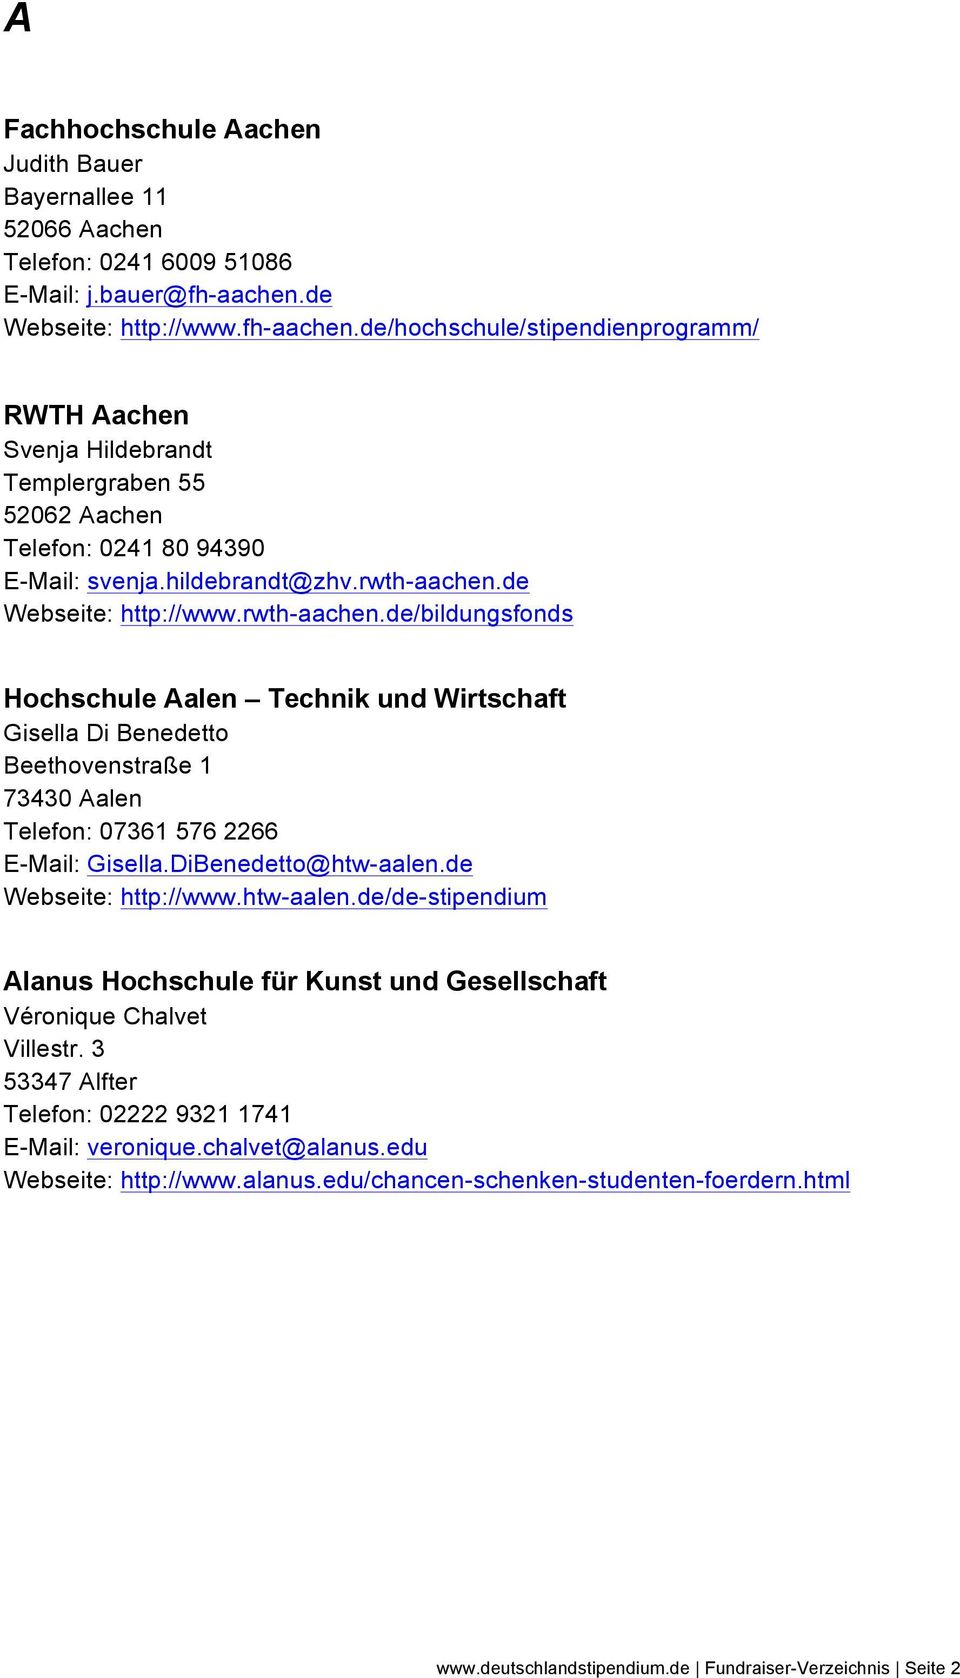 de Webseite: http://www.rwth-aachen.de/bildungsfonds Hochschule Aalen Technik und Wirtschaft Gisella Di Benedetto Beethovenstraße 1 73430 Aalen Telefon: 07361 576 2266 E-Mail: Gisella.